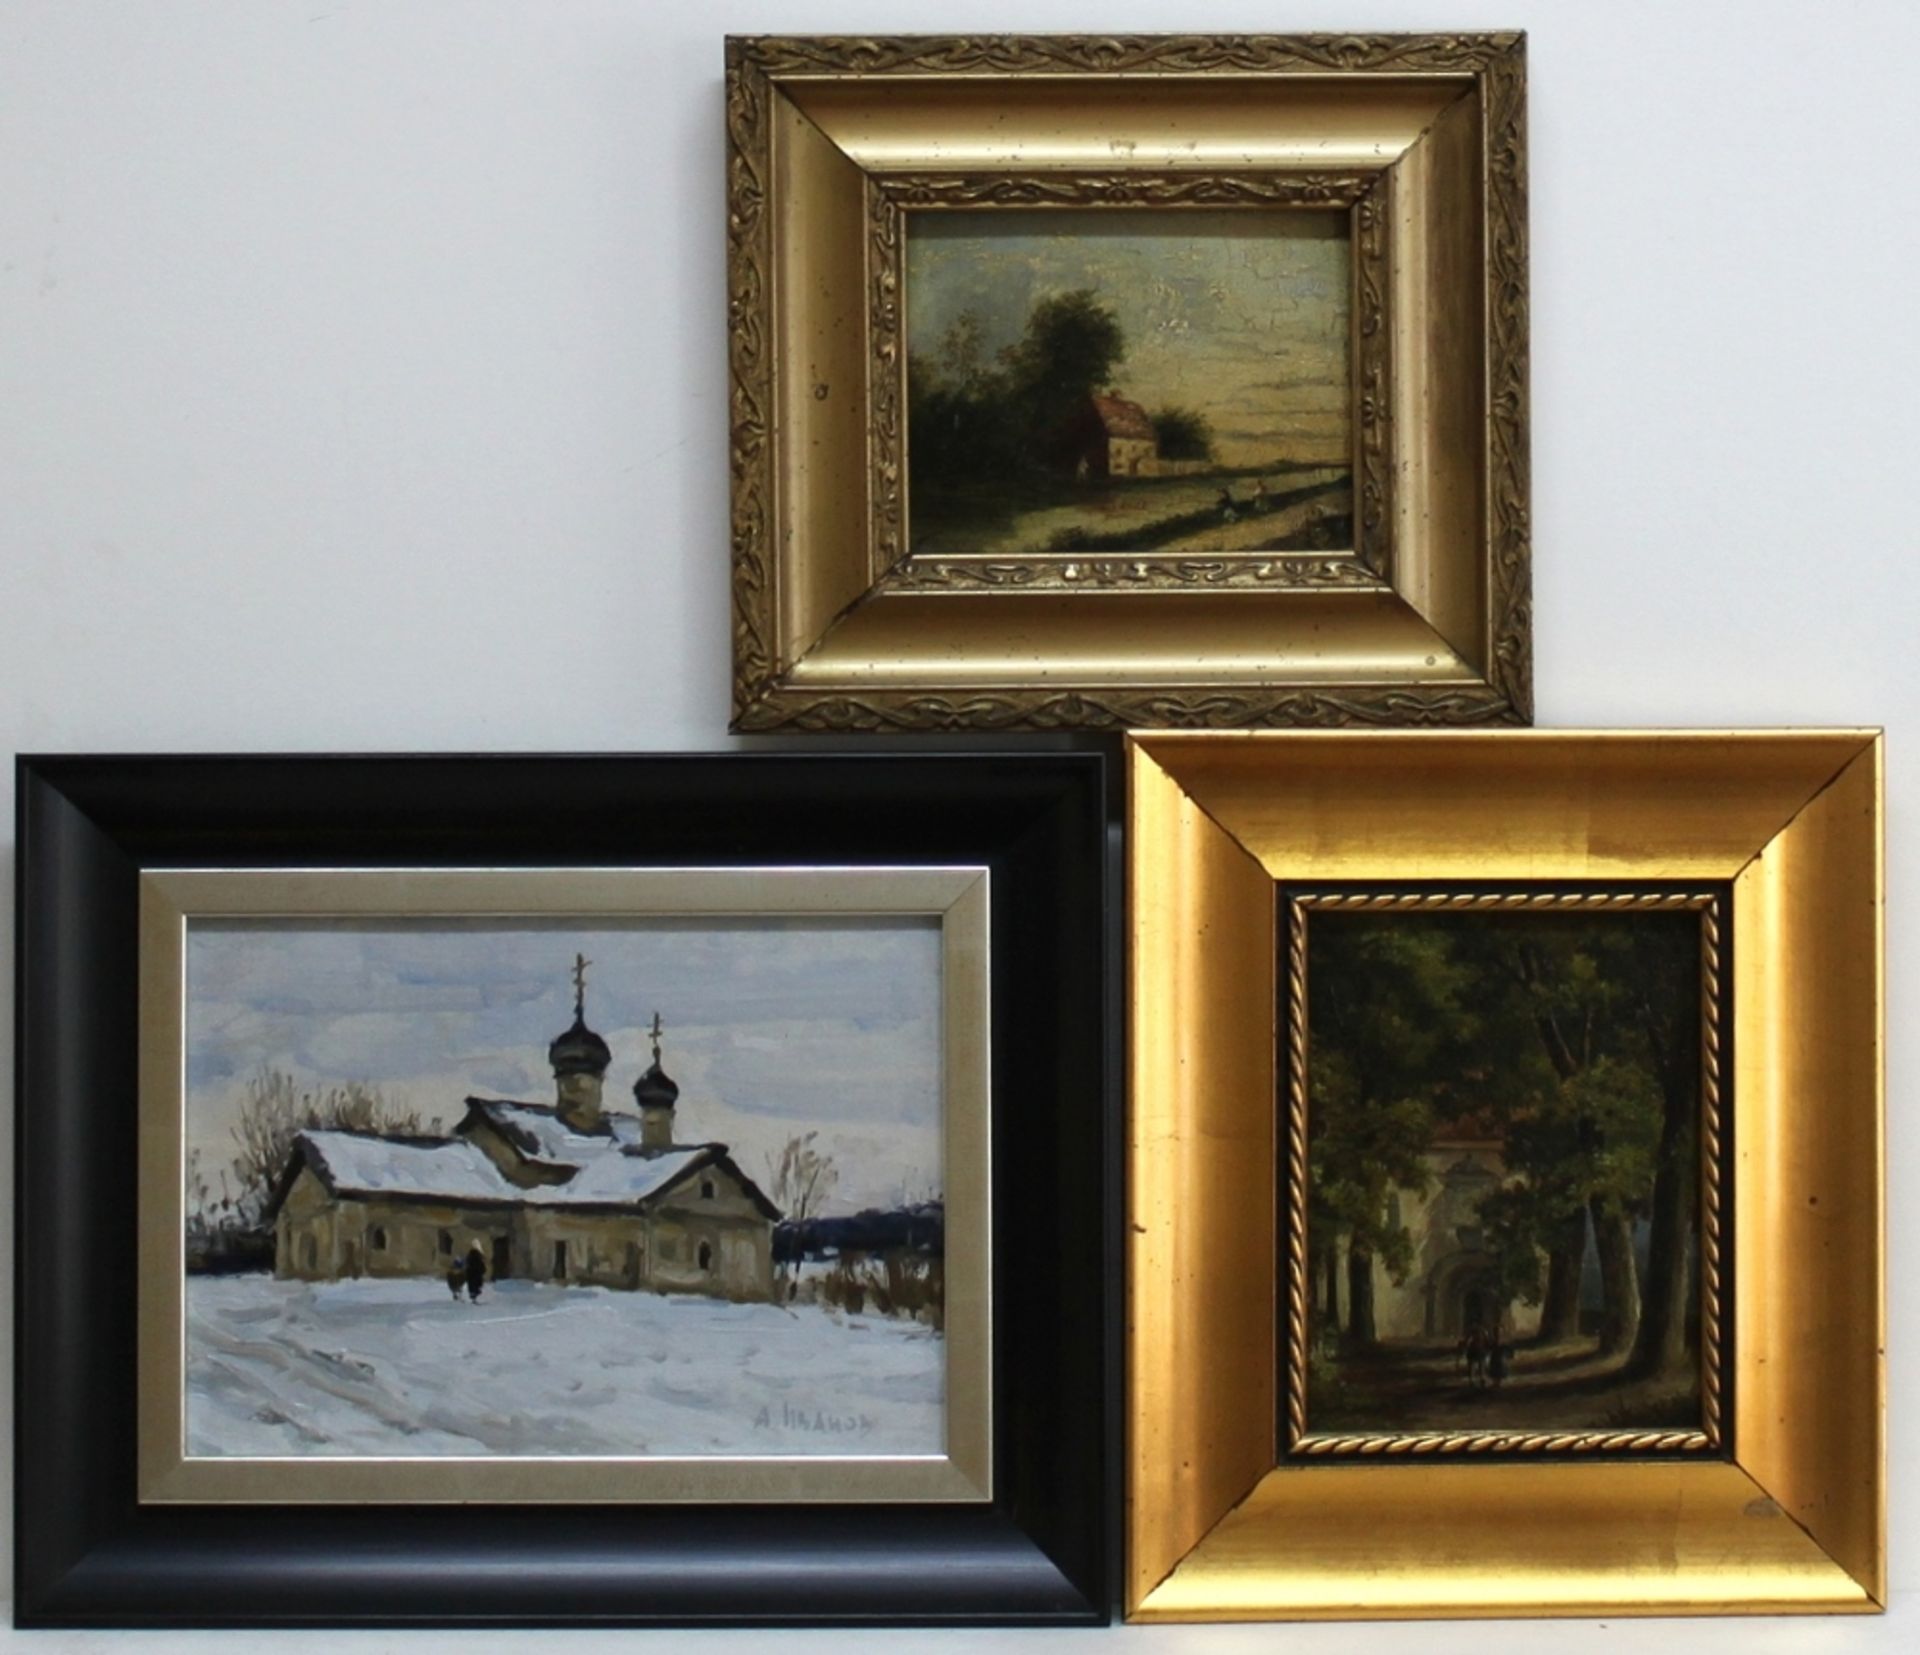 Landschaftsbilder. Drei kleinformatige Landschaftsbilder. Ölgemälde auf Holz und Malpappe. Zum